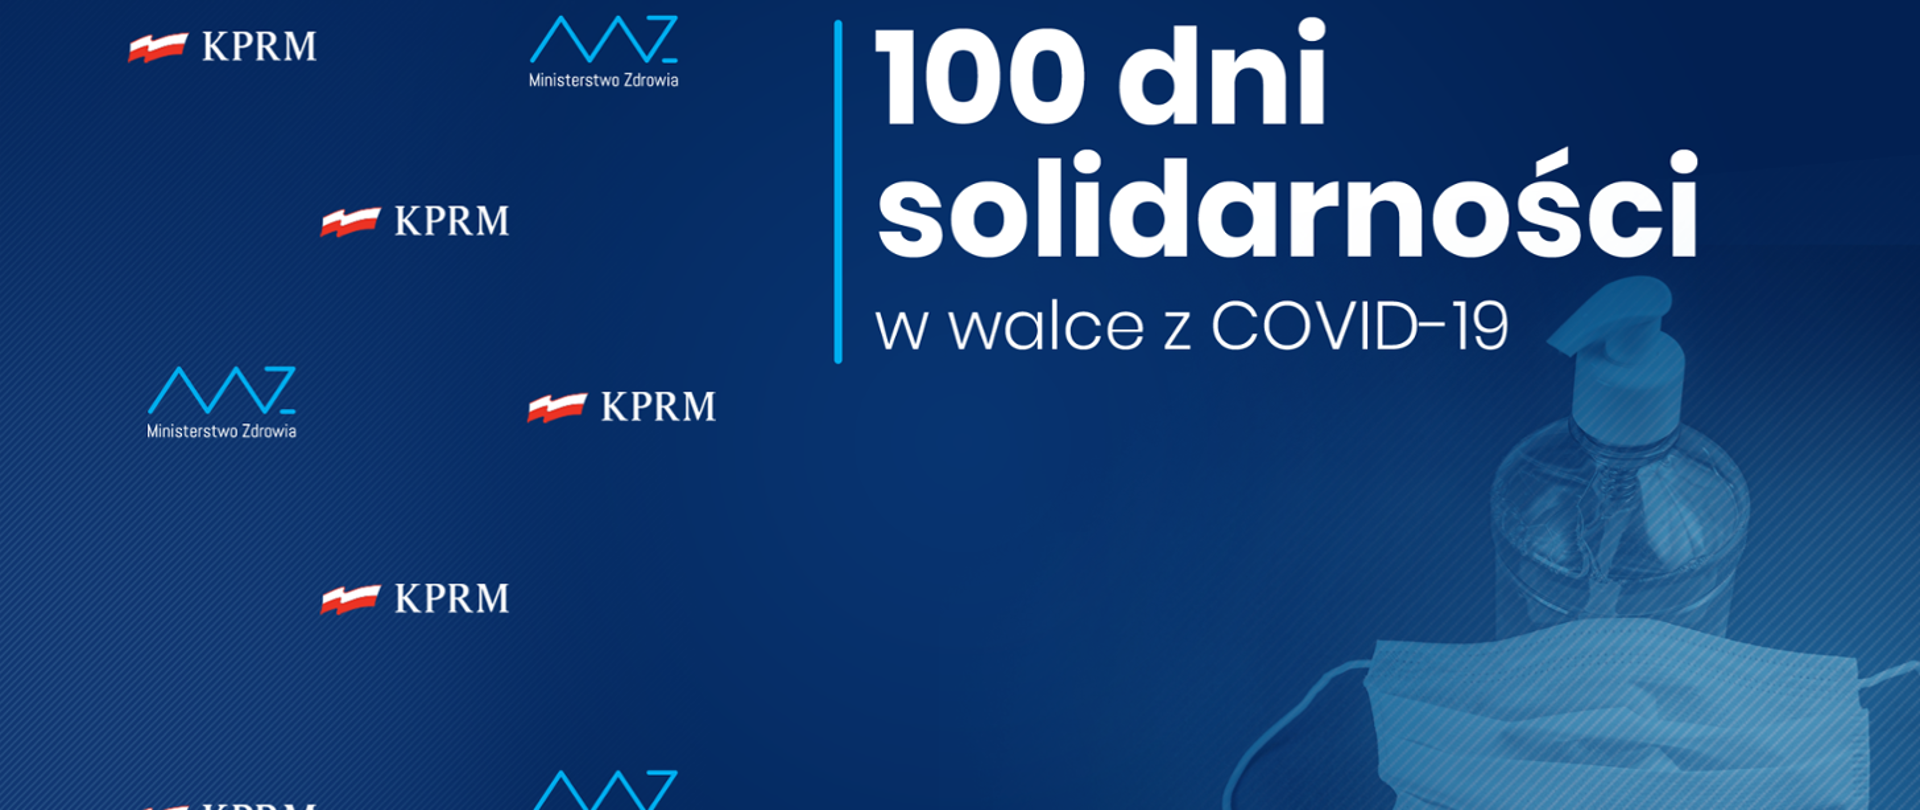 100 dni solidarności w walce z COVID-19